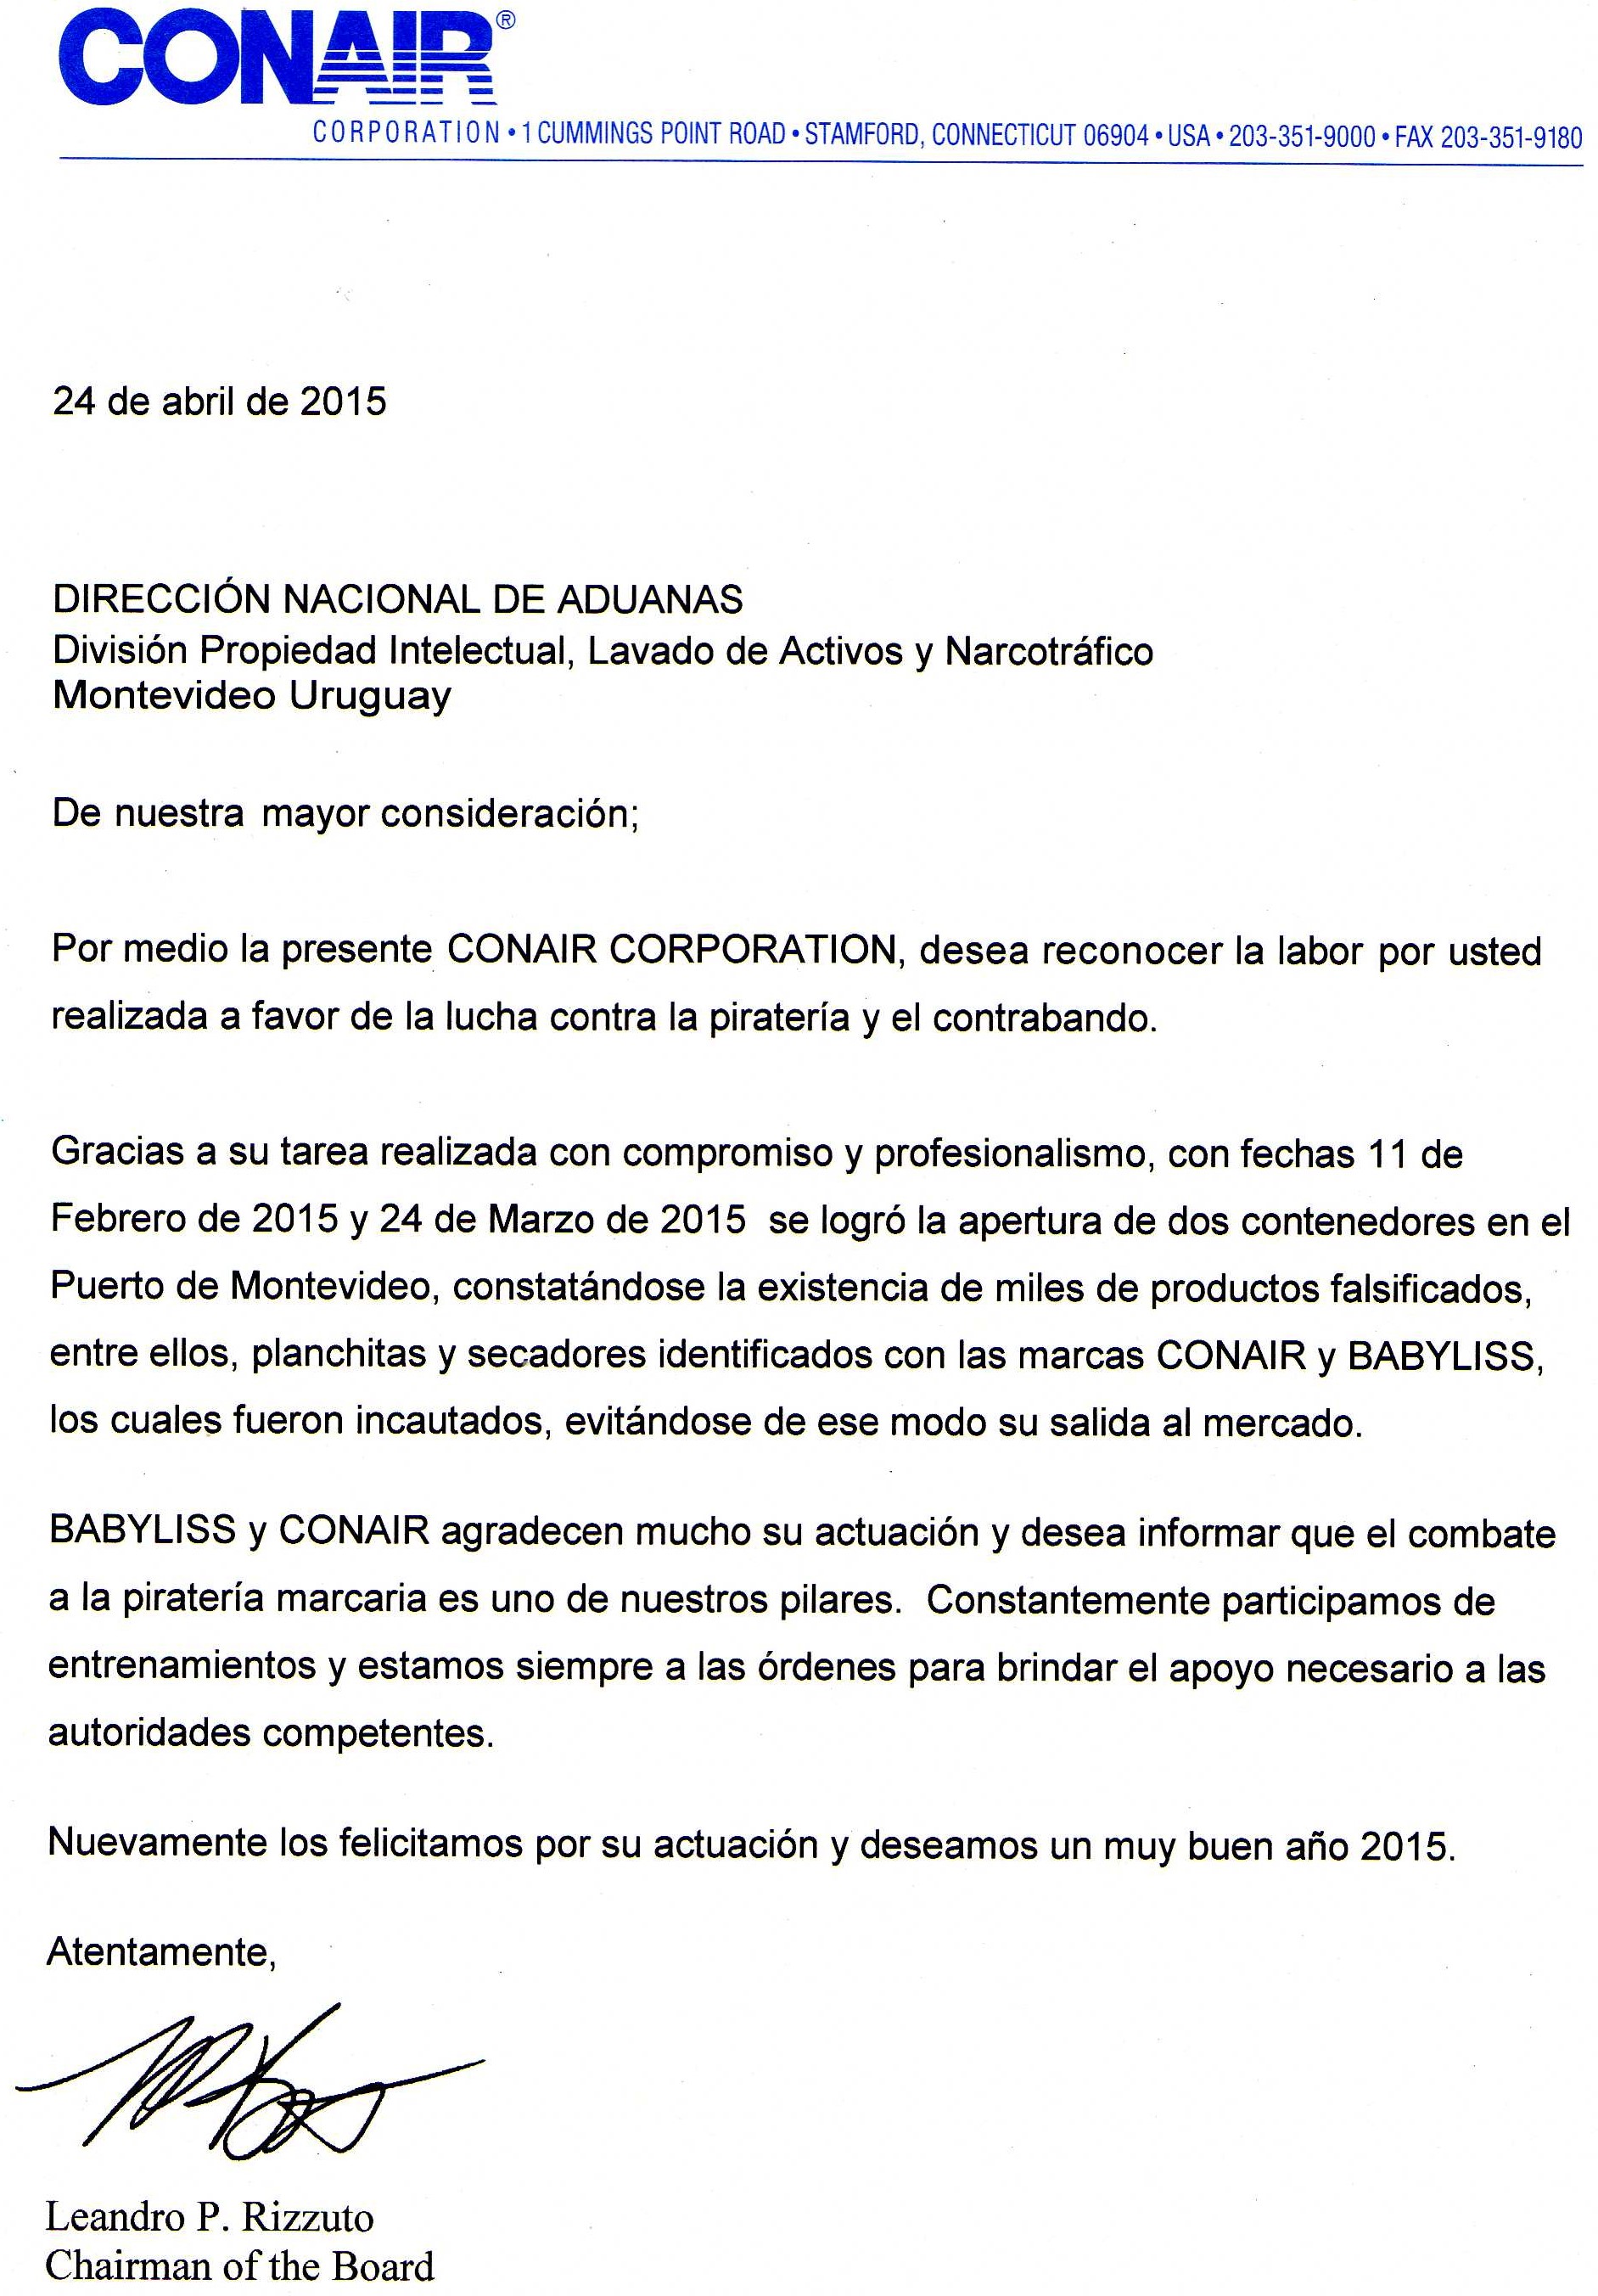 ADUANAS - Conair Corporation agradeció accionar de la 